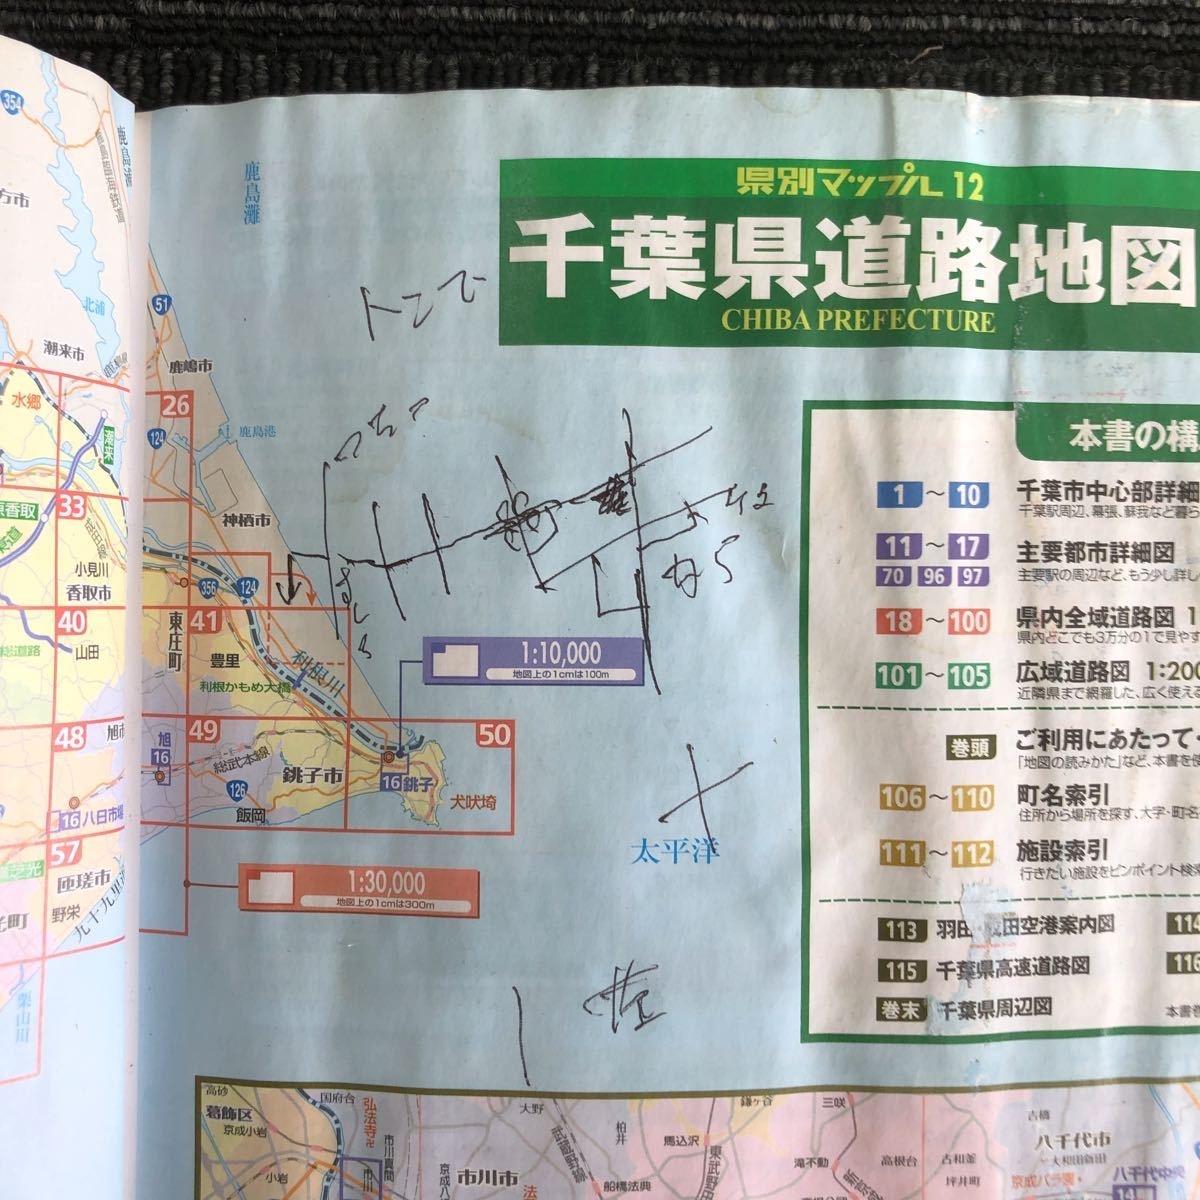 k[e18]*2015 год * префектура другой Mapple 12 Chiba префектура карта дорог префектура внутри вся область 1:30,000 Chiba город центр часть / город подробный план / широкий район дорога map прошлое Drive книга@ текущее состояние 